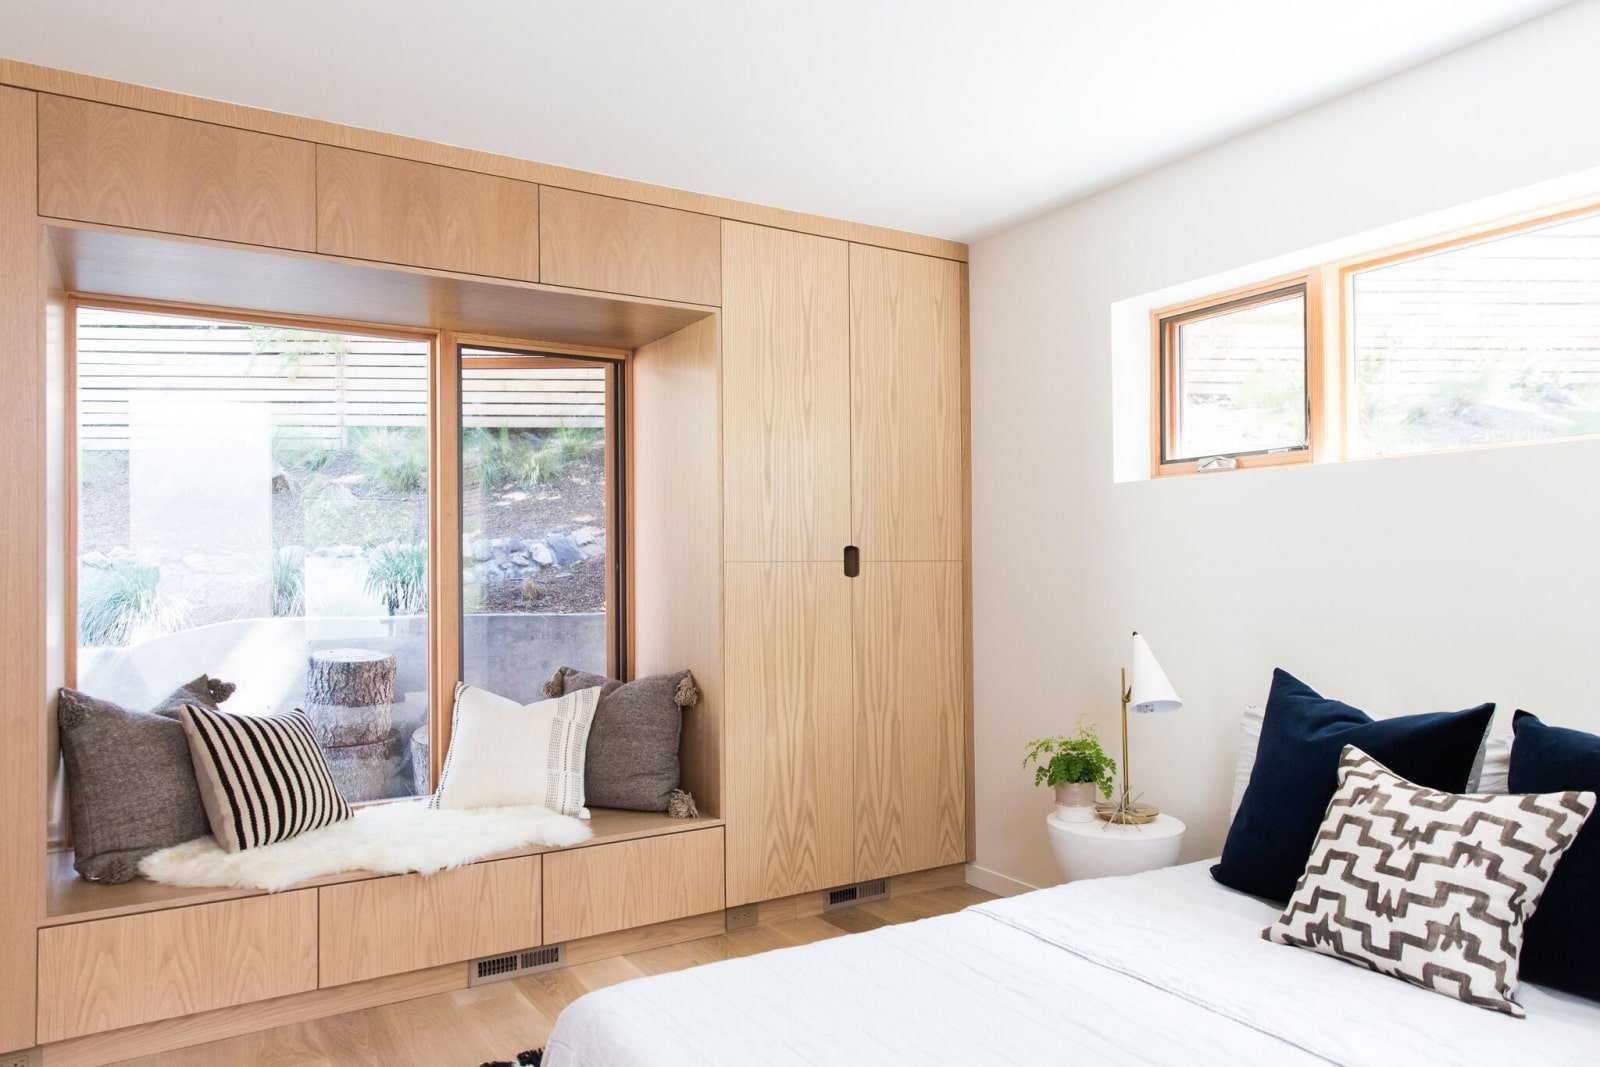 Шкафы вокруг окна — 15 решений, которые создадут практичное и красивое место для хранения